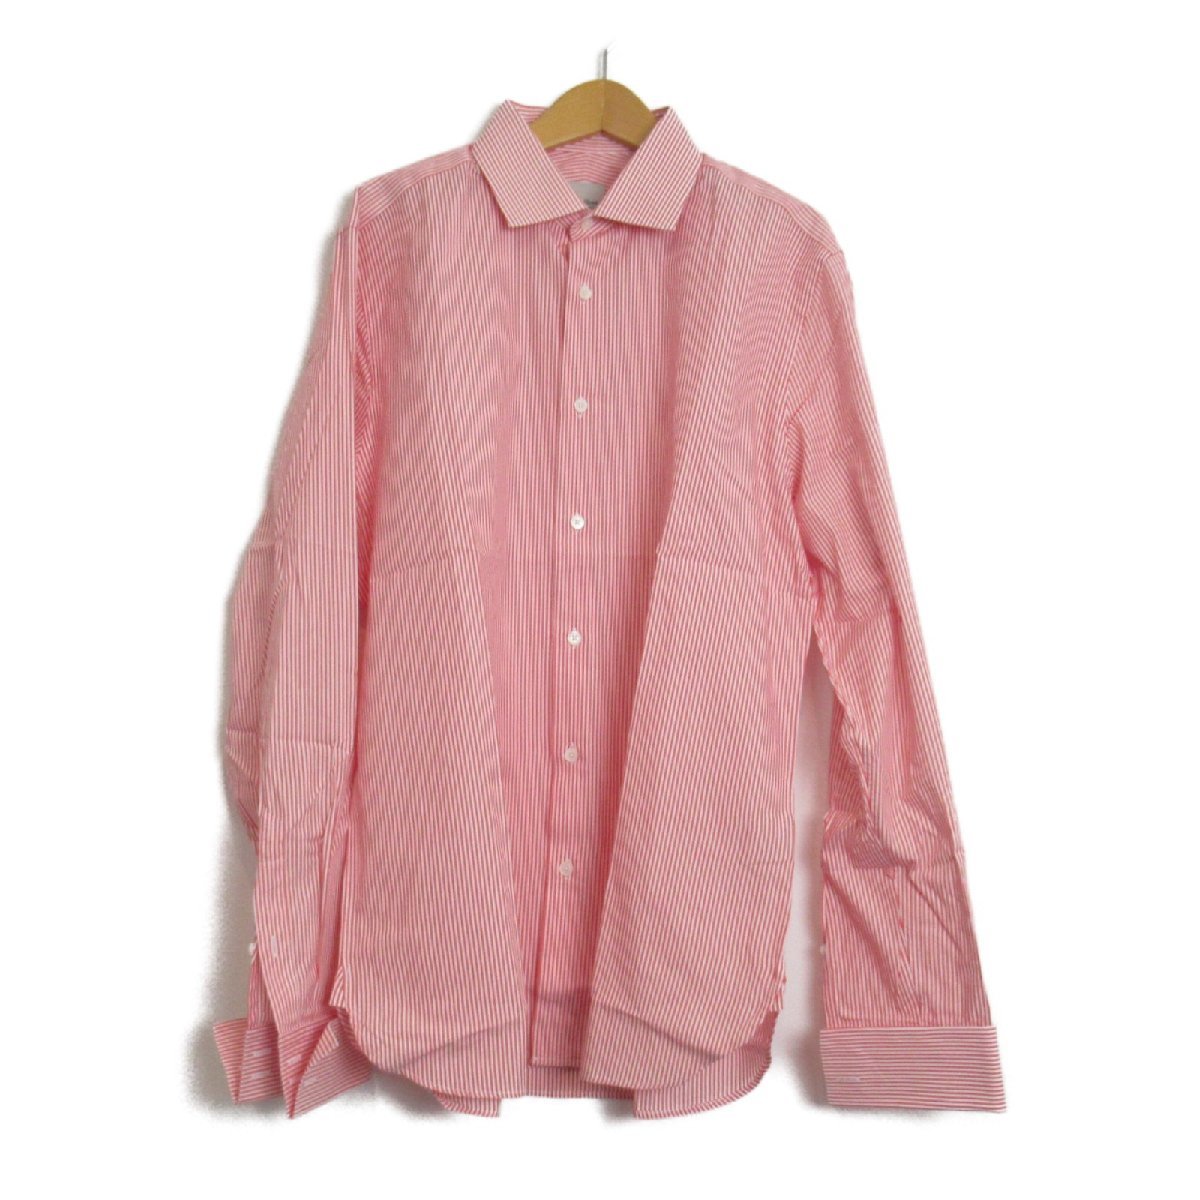 SELECTION セレクション 半袖シャツ メンズシャツストライプ ピンク系 コットン 中古 メンズ